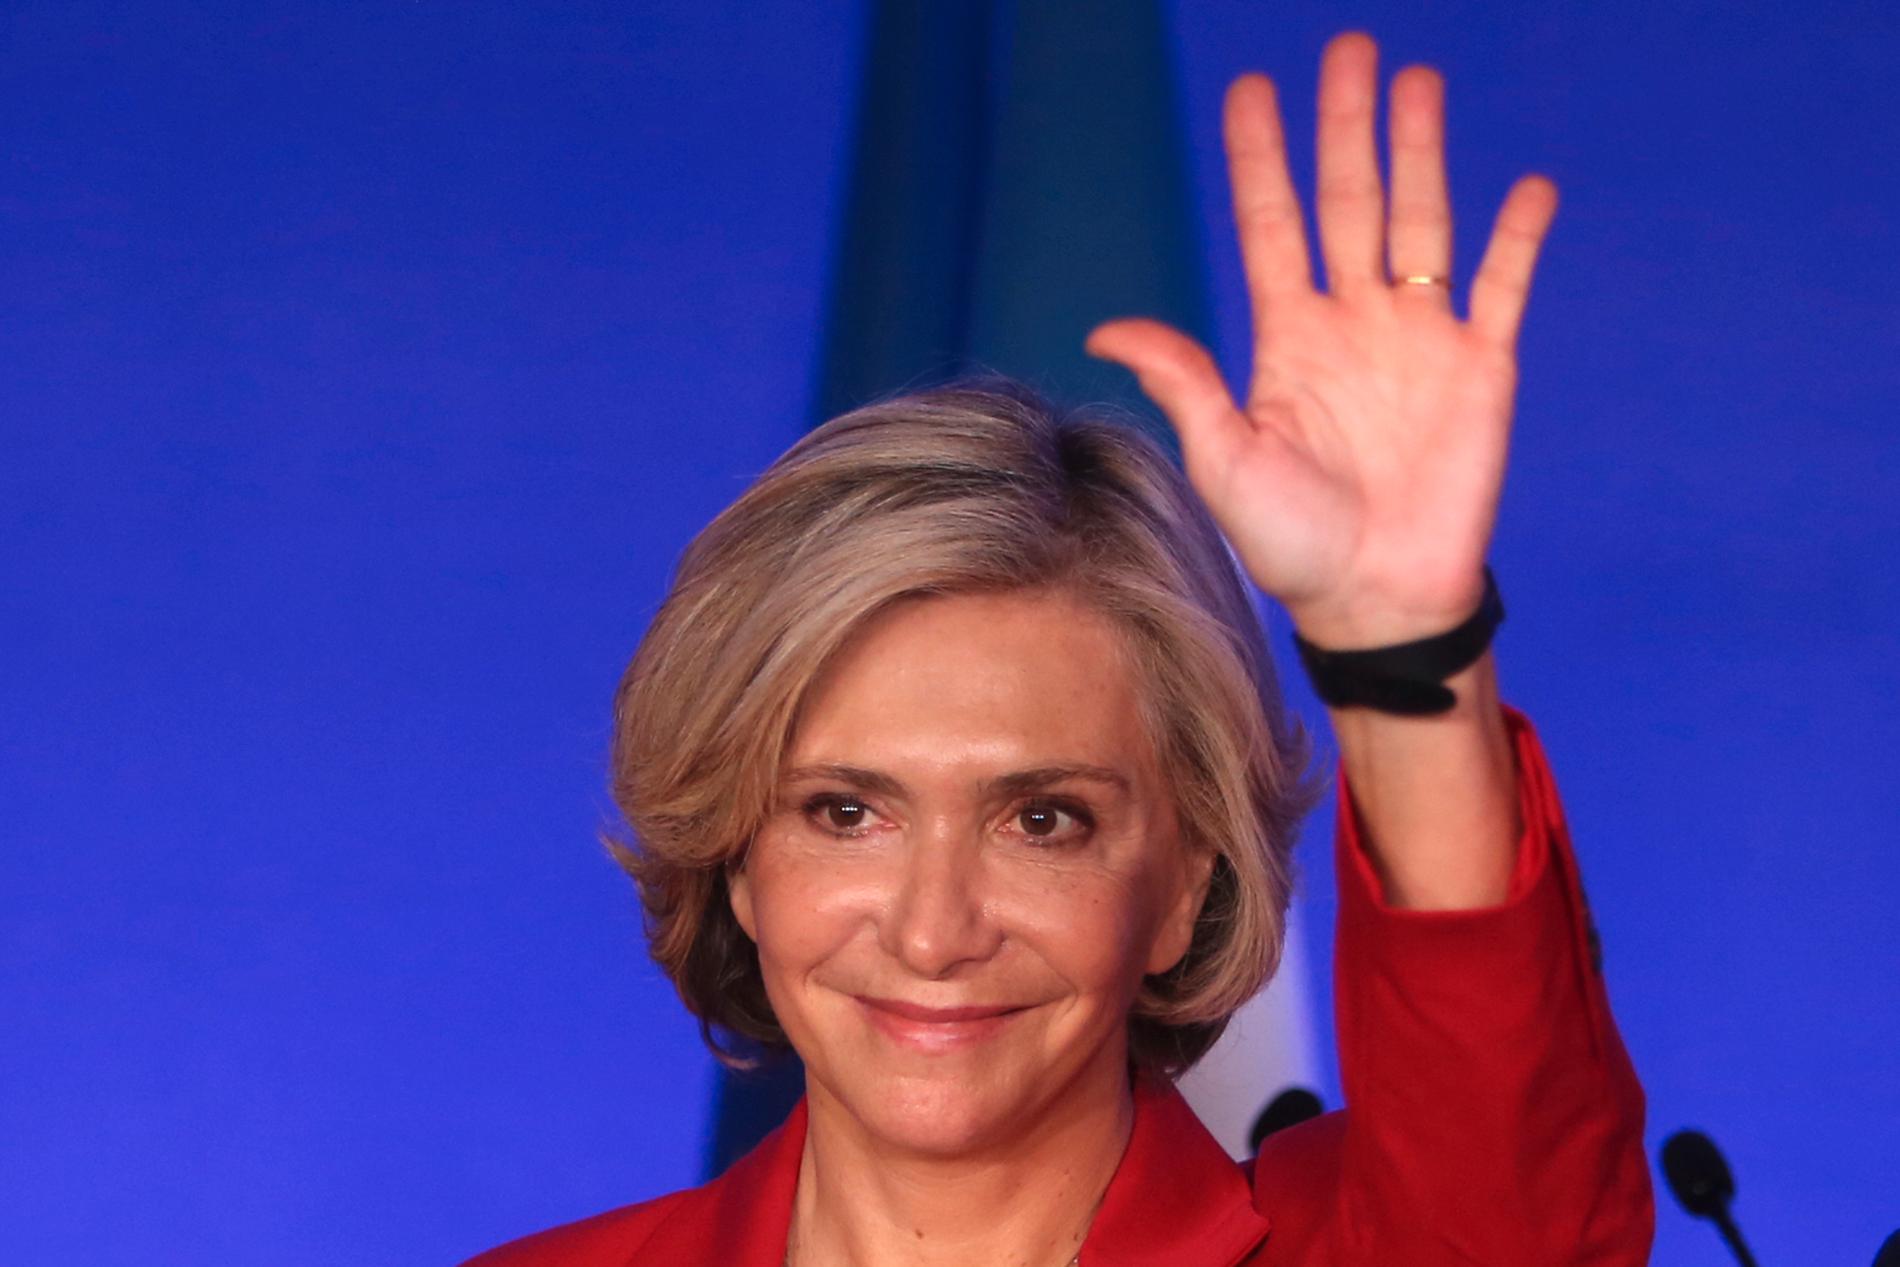 Valérie Pécresse, regional ledare i Paris-regionen Île-de-France, valdes i lördags till presidentkandidat för franska högerpartiet Republikanerna (LR).